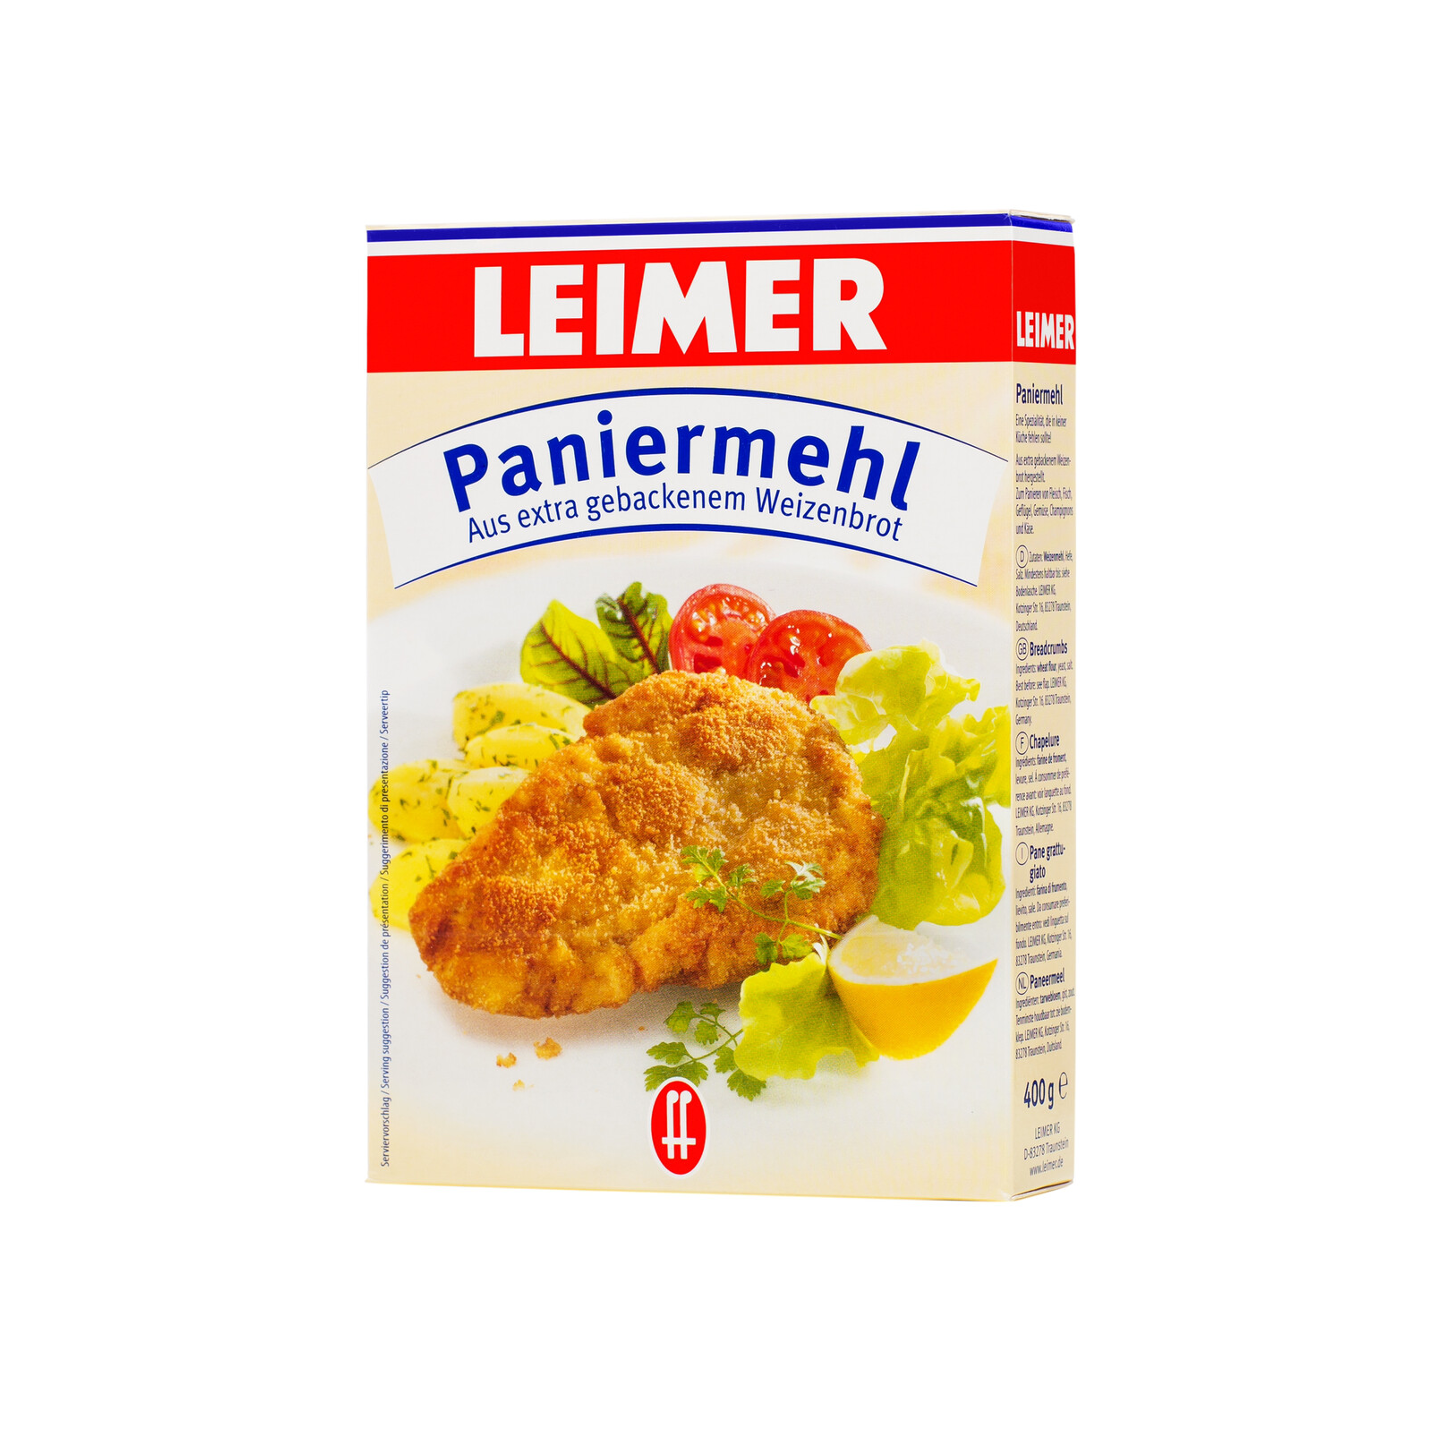 Leimer Paniermehl (Bread Crumbs)